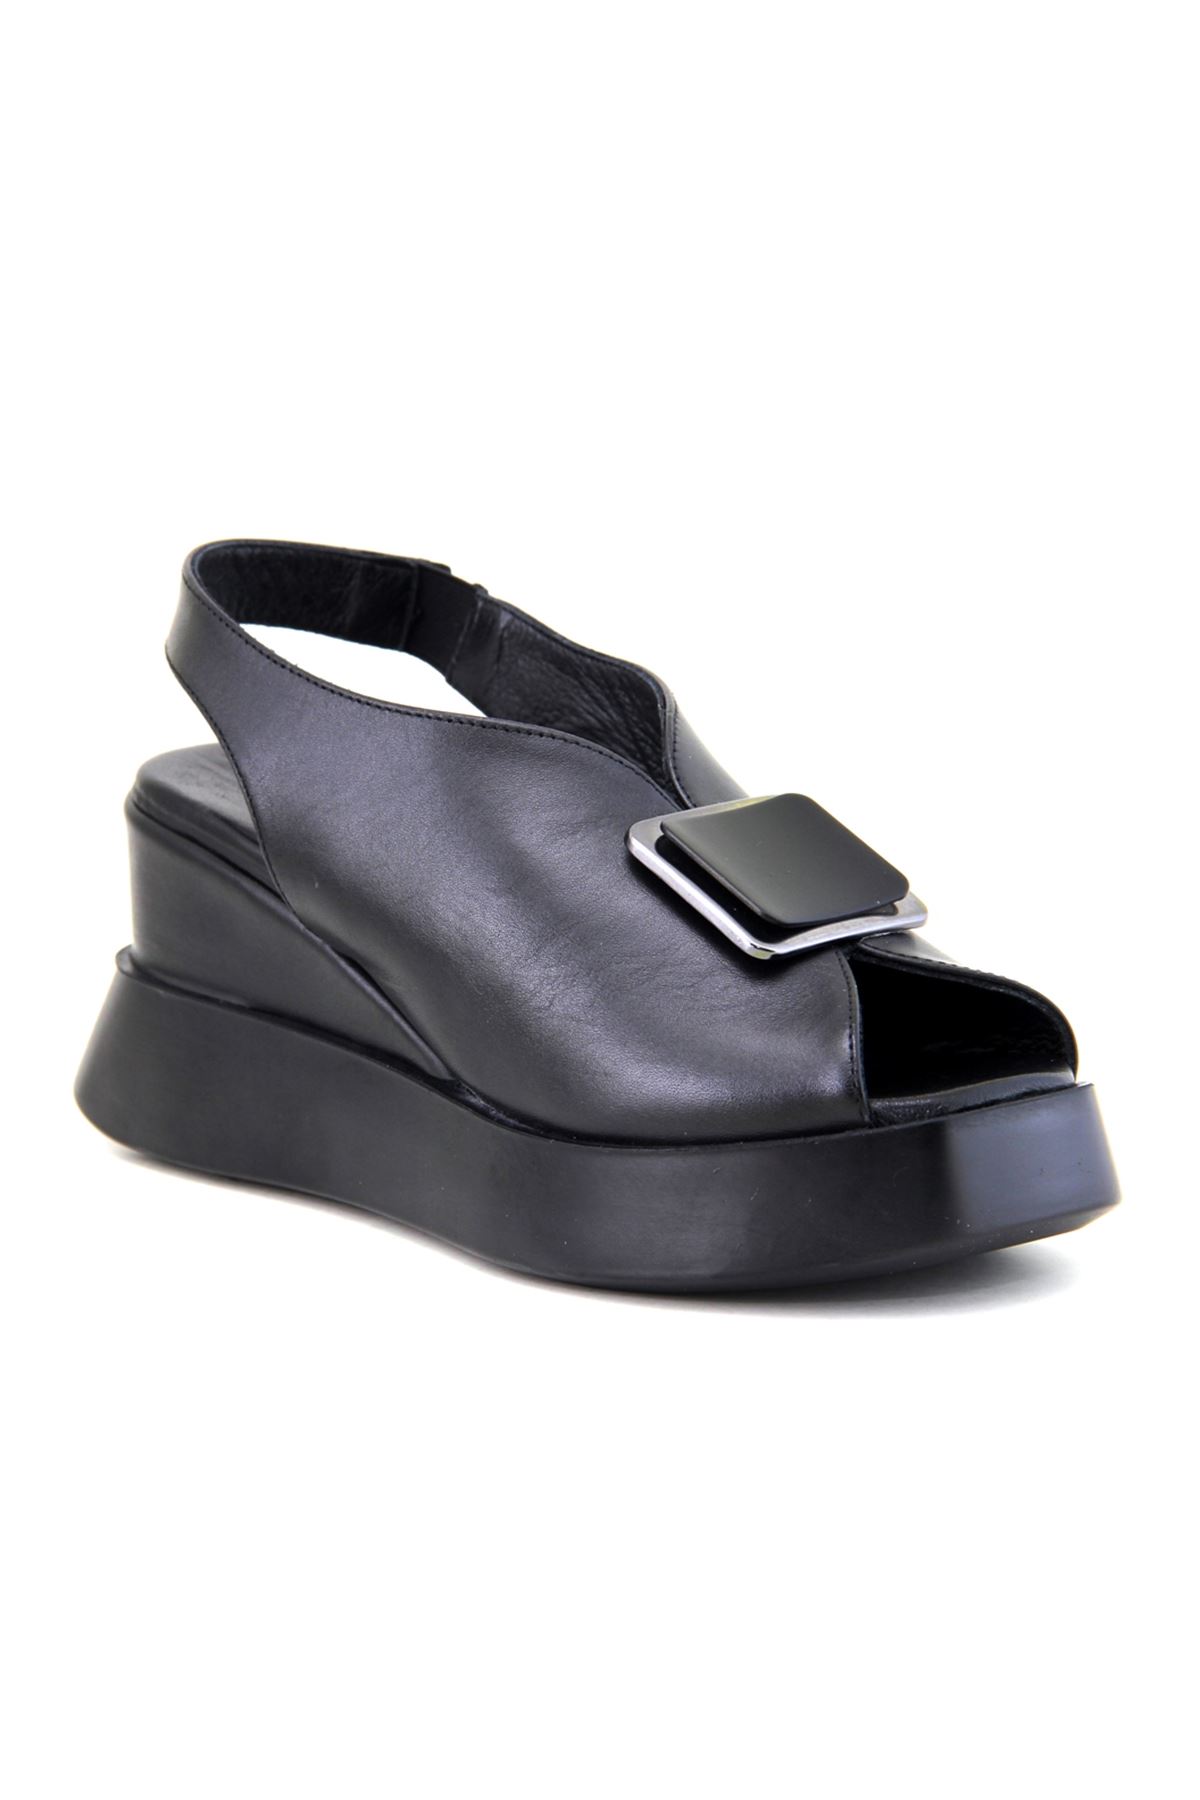 Albini 10240 Hakiki Deri Kadın Sandalet - Siyah